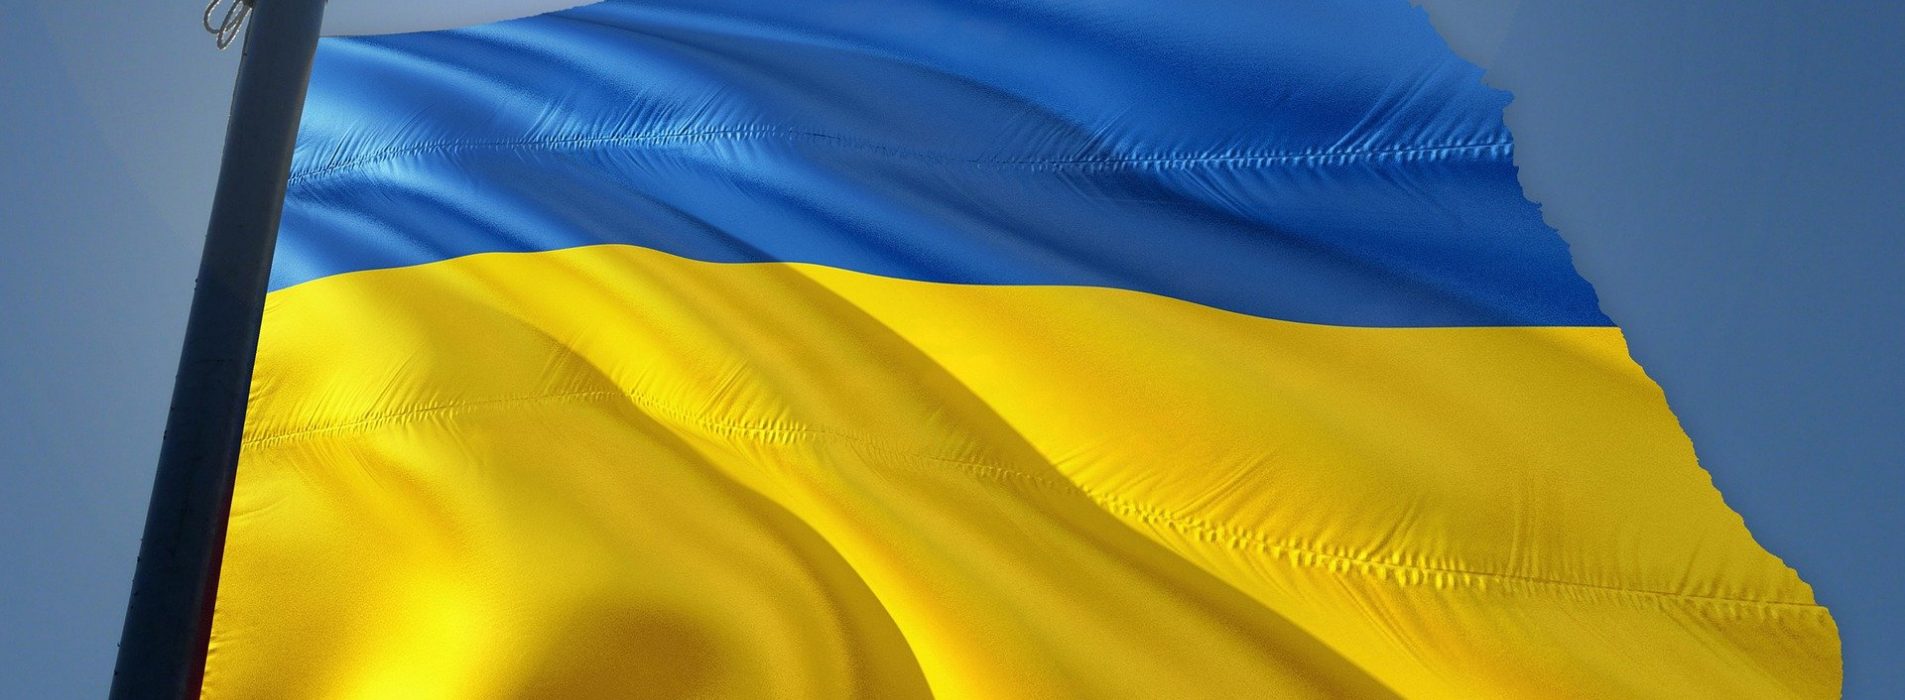 Ukrainan lippu. Kuva Gerd Altmann / Pixabay